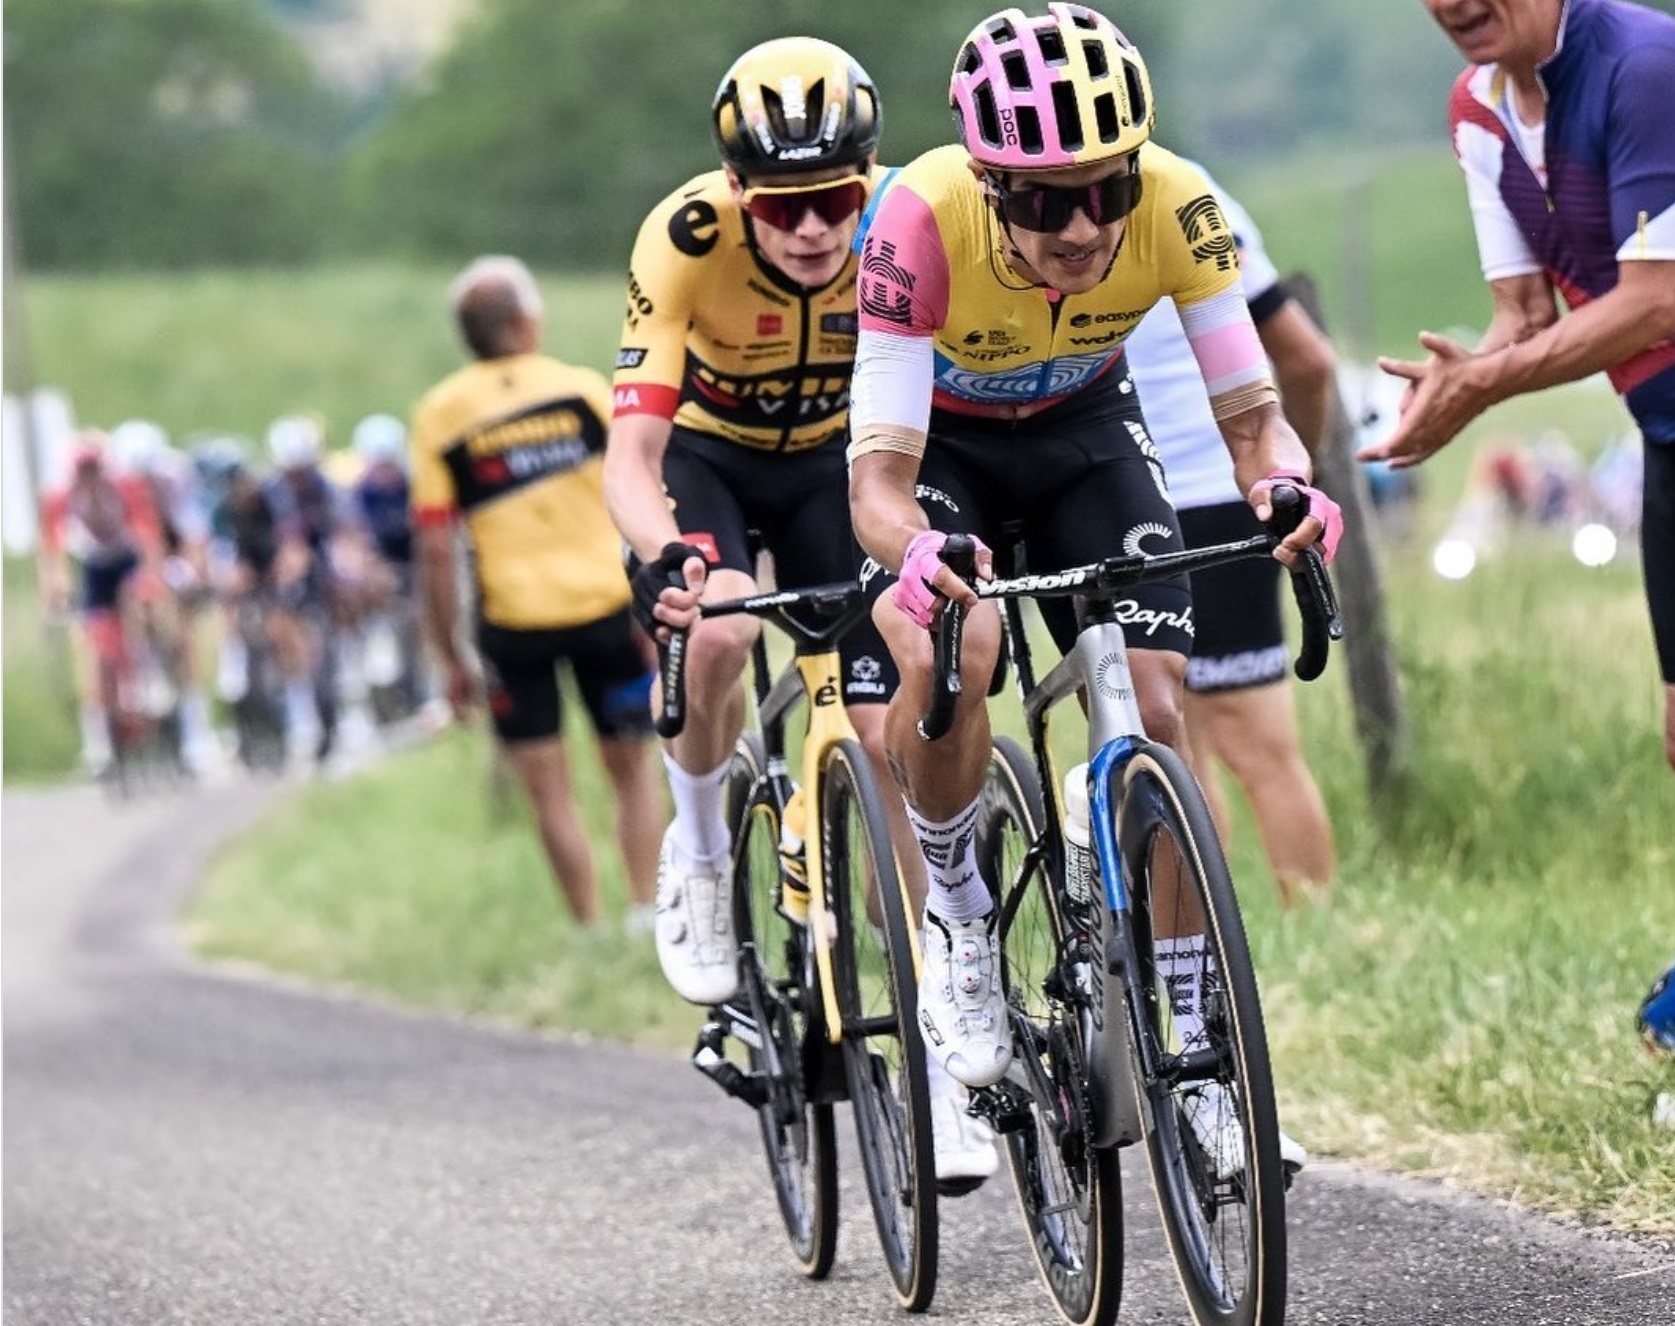 ¿Cómo le irá Carapaz en el Tour de Francia? La Inteligencia Artificial responde